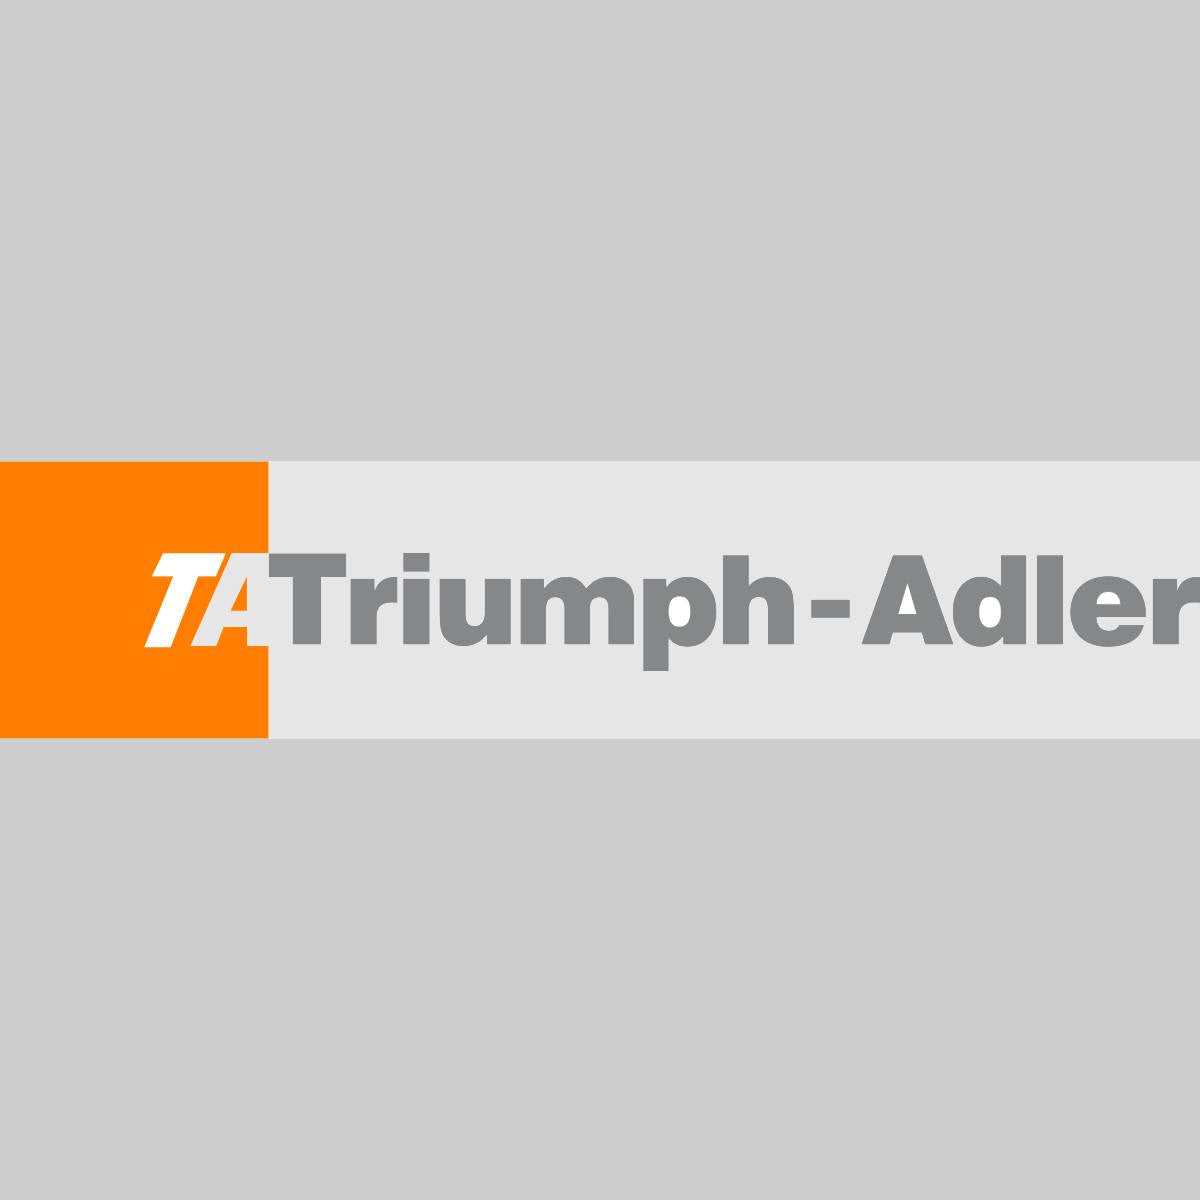 "Originele Triumph Adler Toner Kit Zwart 614010015 voor P 4030i MFP/P 4035i MFP NE